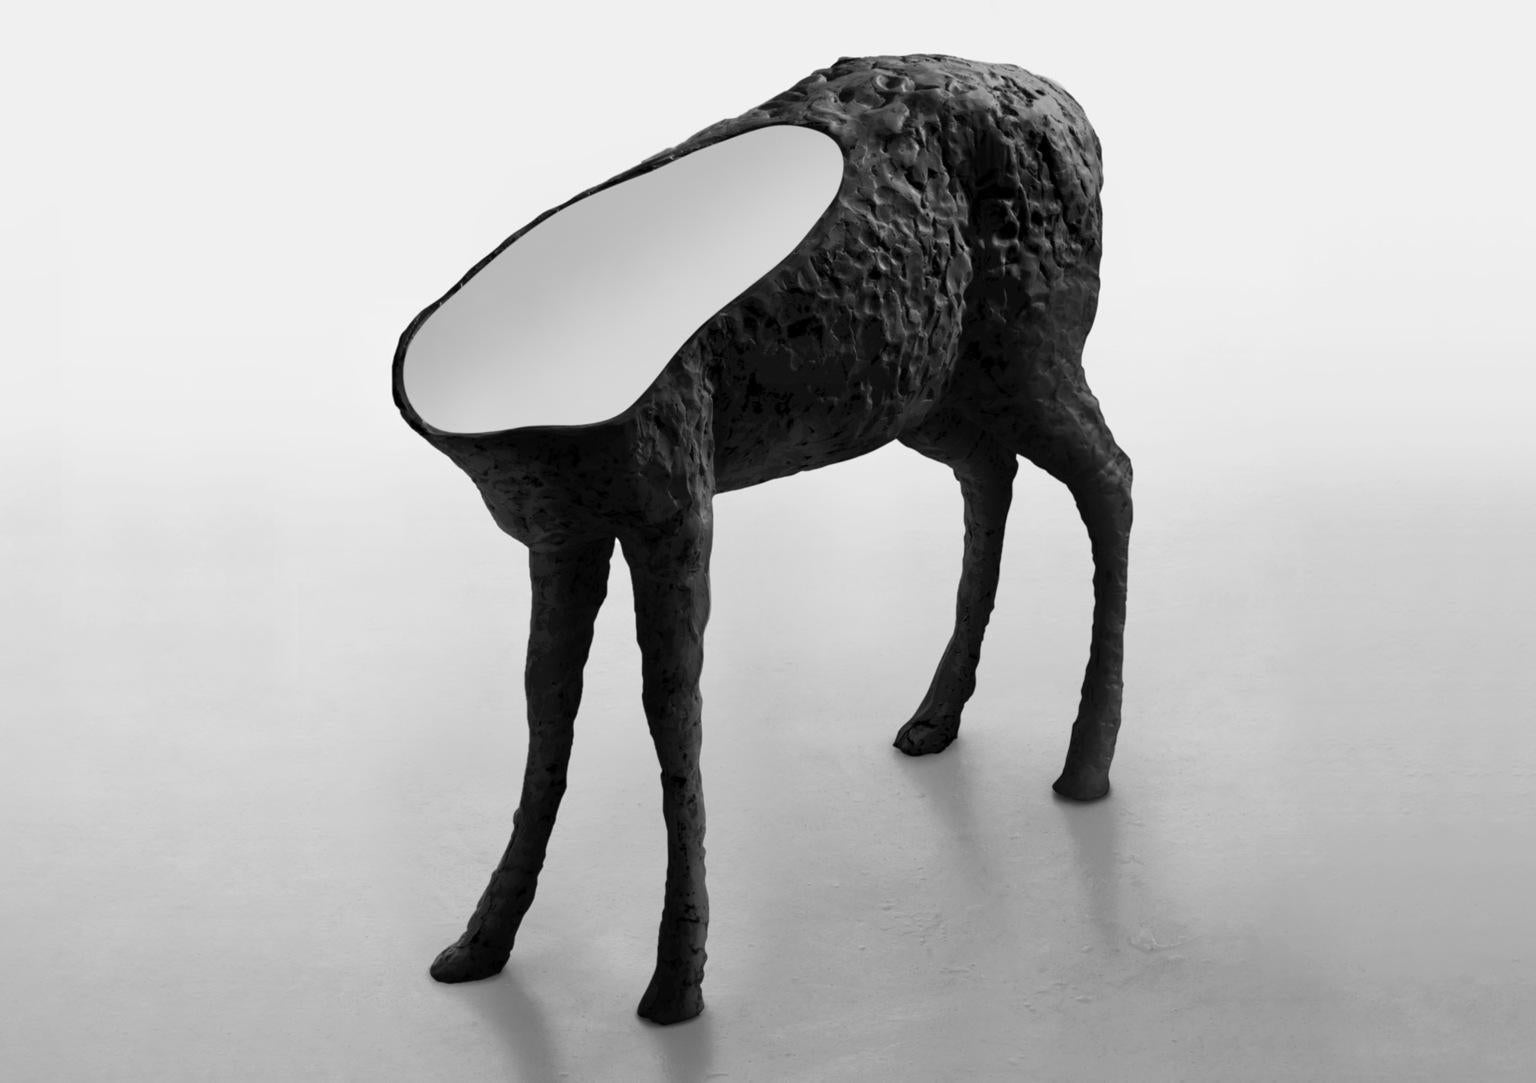 Miroir sculpté Mirroe par Imperfettolab
Dimensions : L 110 x D 32 x H 90 cm
MATERIAL : Fibre de verre, miroir
Disponible en 2 couleurs : noir, blanc.
 
Un miroir qui semble sortir d'un rêve où les créatures du monde animal et les objets symboliques